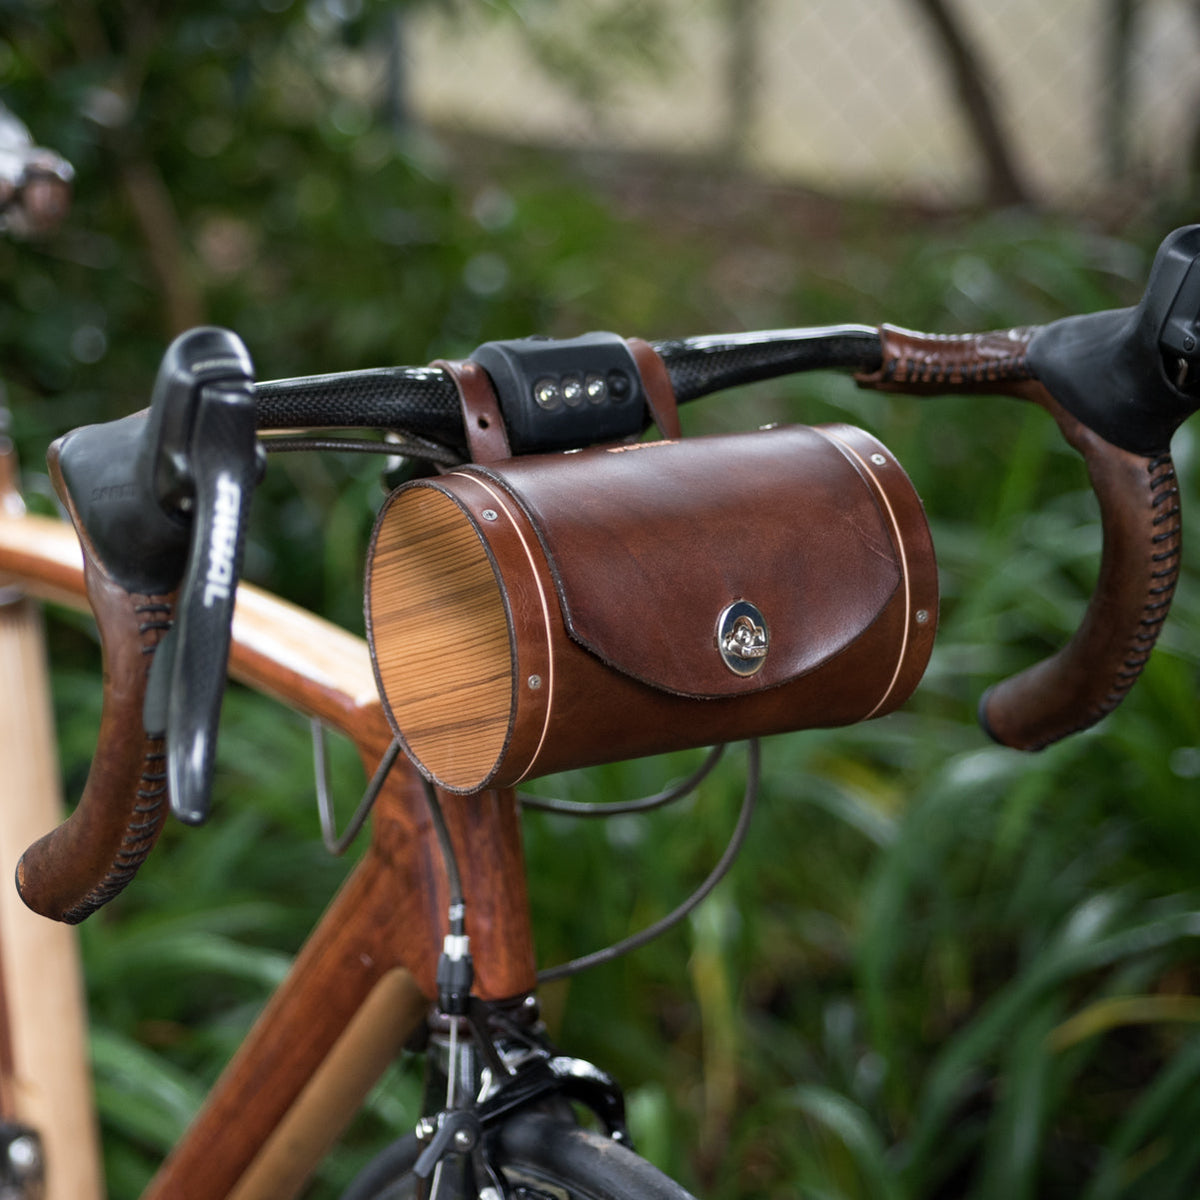 Bicycle Handlebar Bag "The Barrel Bag" -